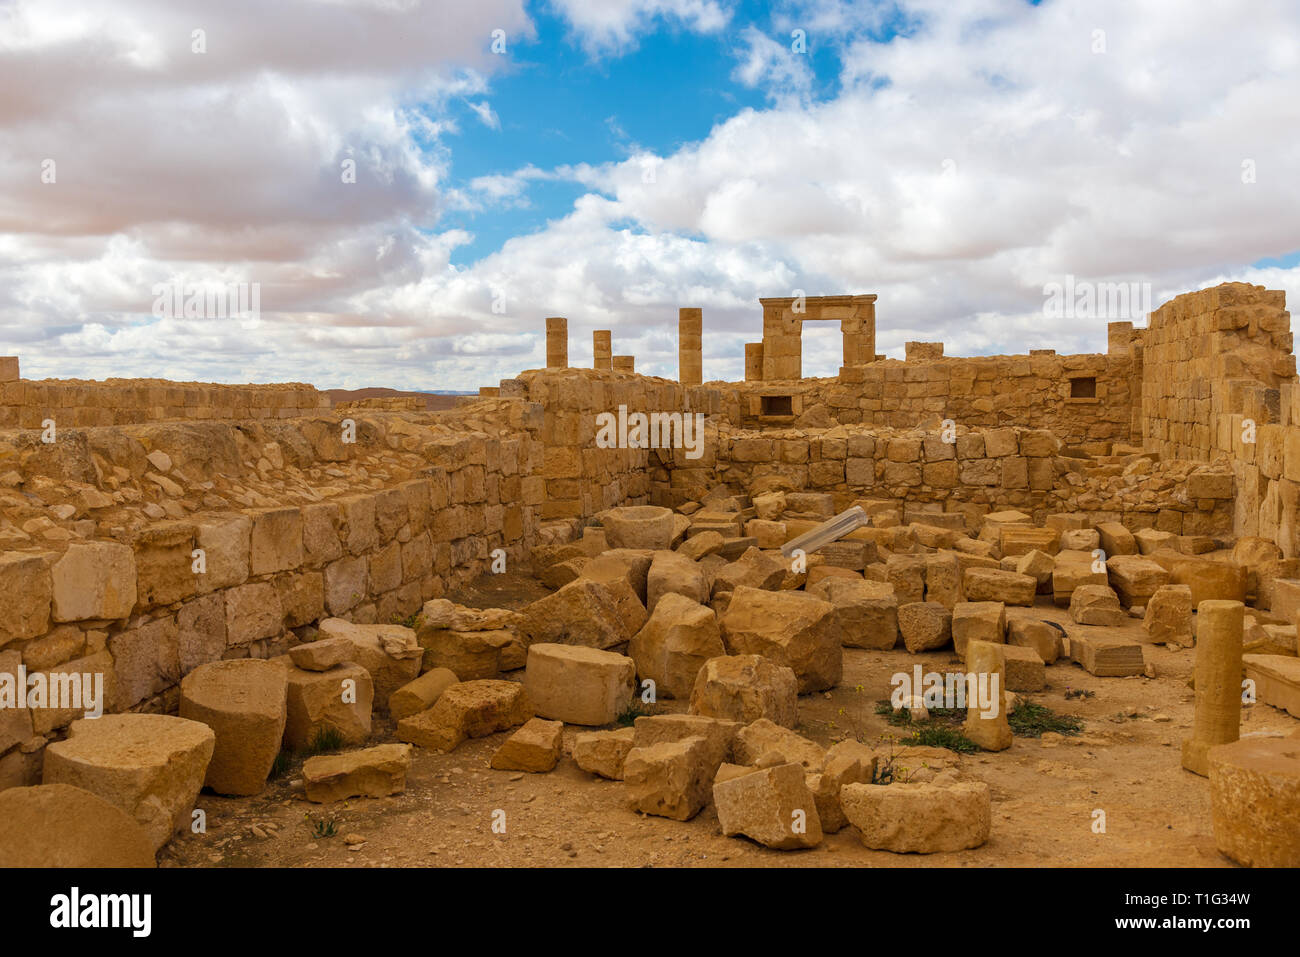 AVDAT, Israel/Feb 19, 2018: Die Ruinen dieser christlichen Nabatäischen Stadt in der israelischen Wüste Negev, verlassen, nach dem 7. Jahrhundert muslimischen Eroberung. Stockfoto